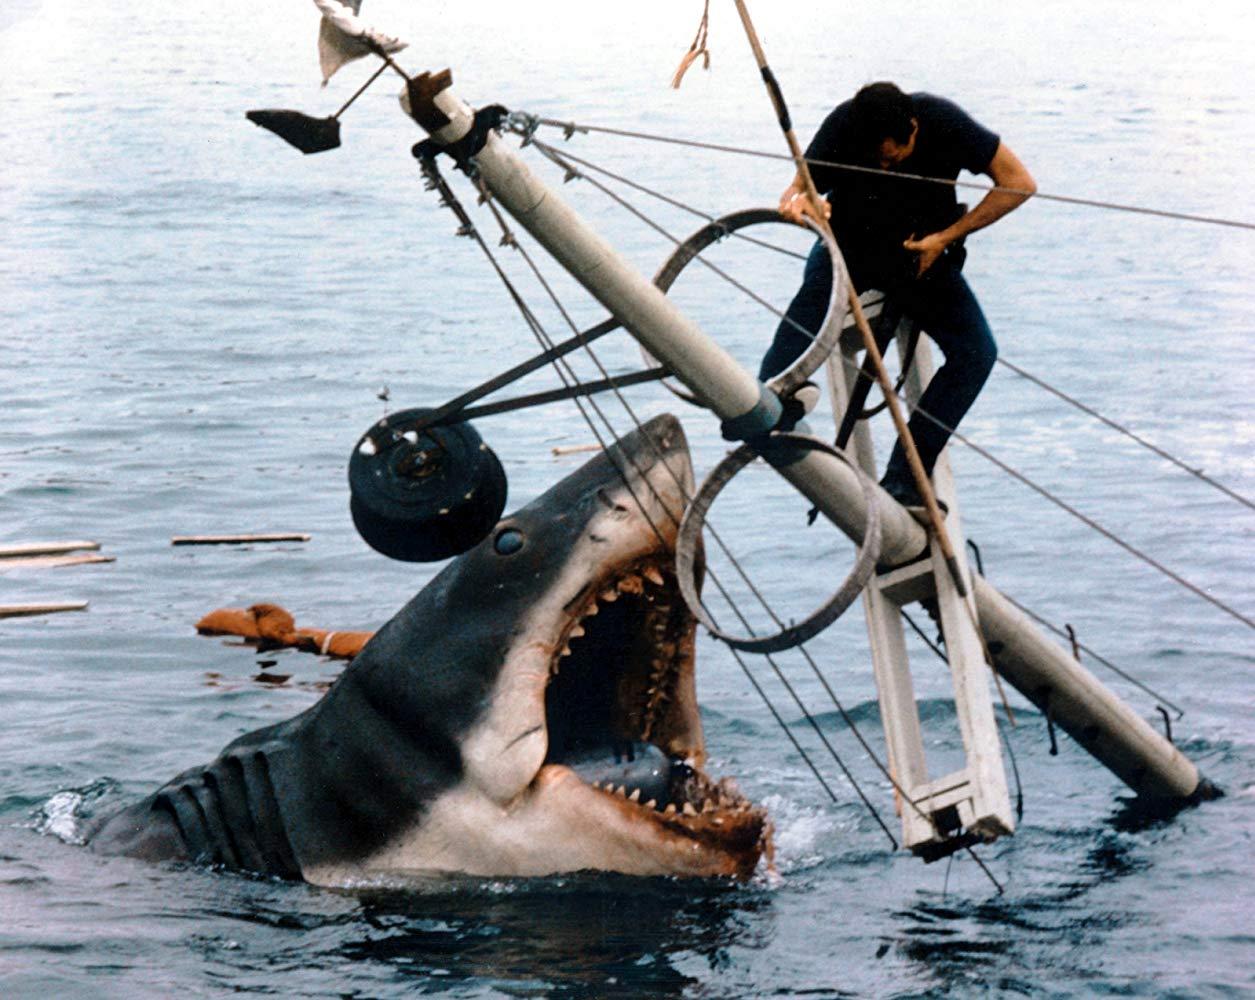 Roy Scheider i Steven Spielbergs ”Hajen” (Jaws) från 1975.